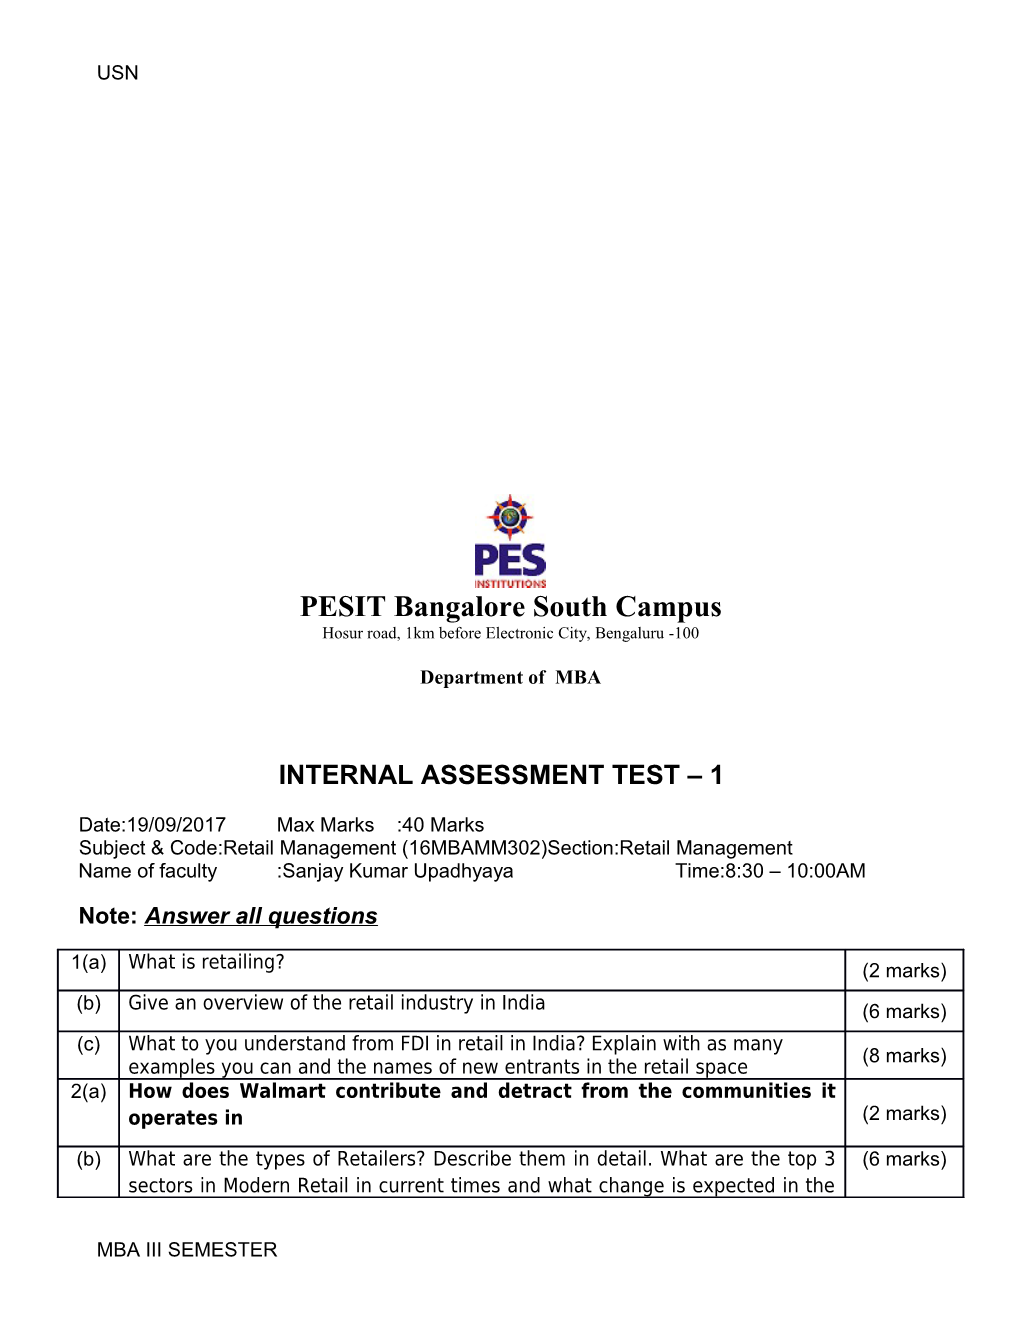 Internal Assessment Test 1